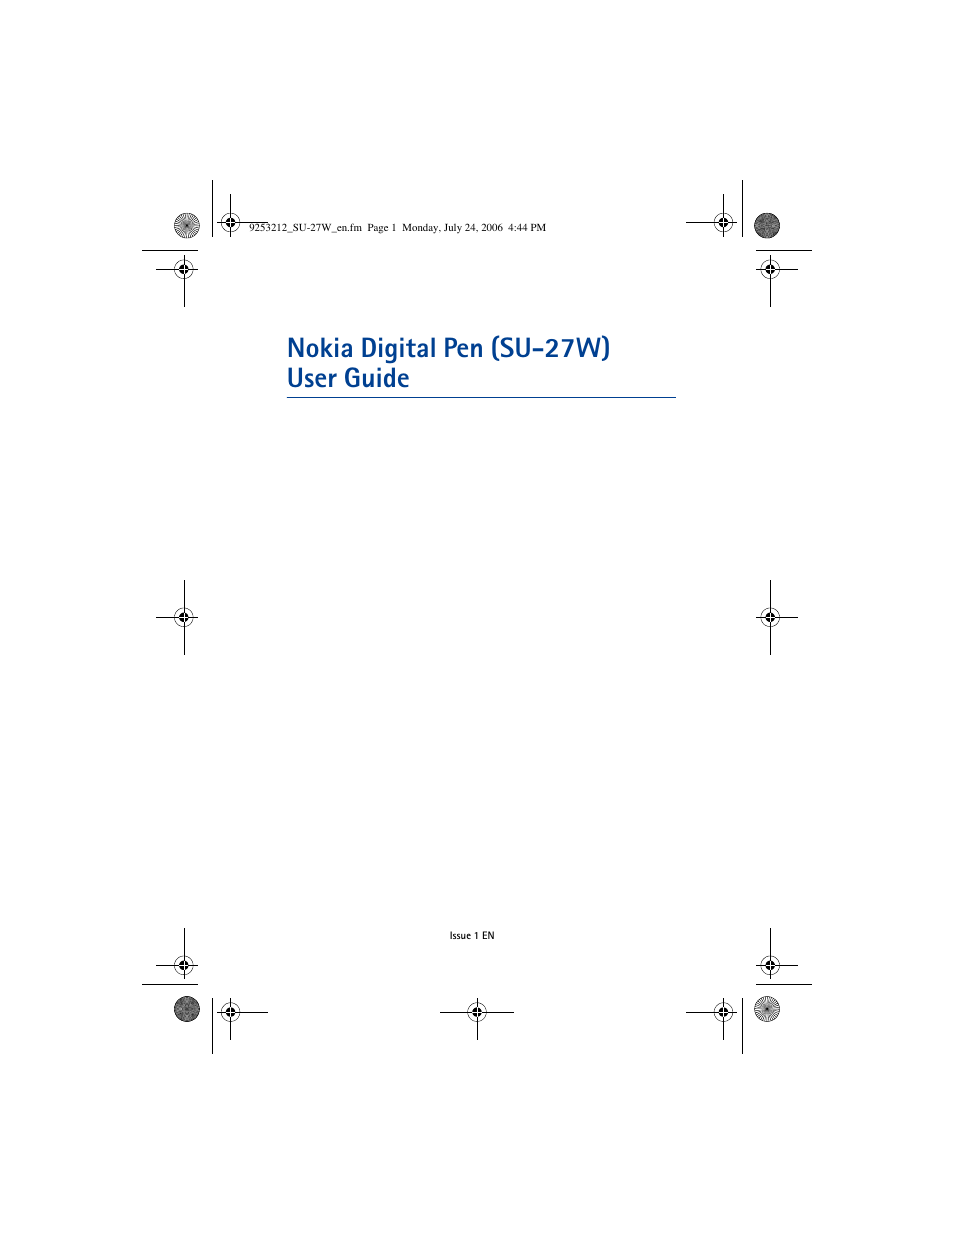 Nikon Nokia Digital Pen SU-27W User Manual | 18 pages